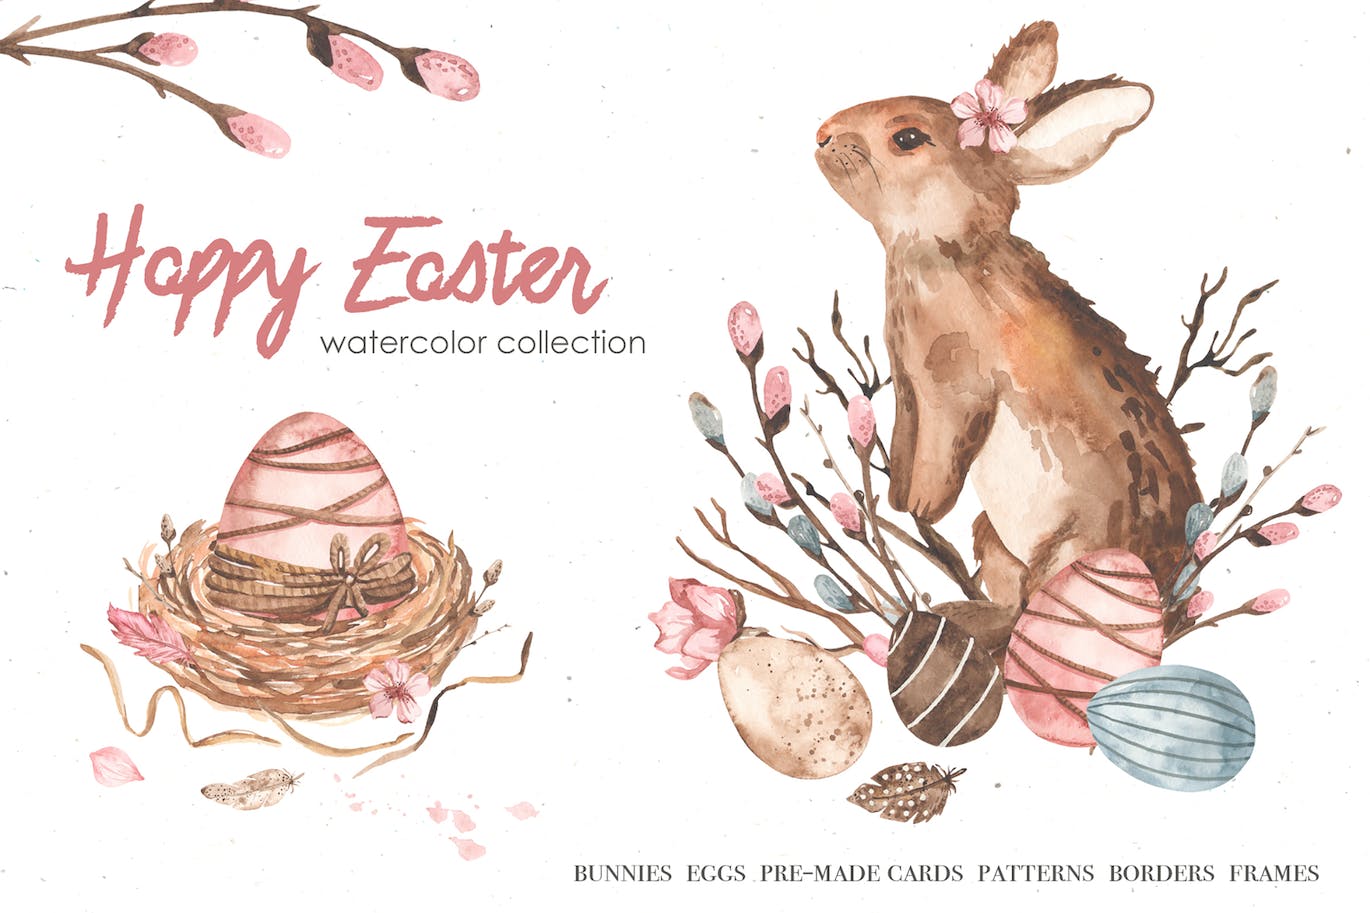 复活节快乐元素水彩画集 Happy Easter watercolor-1